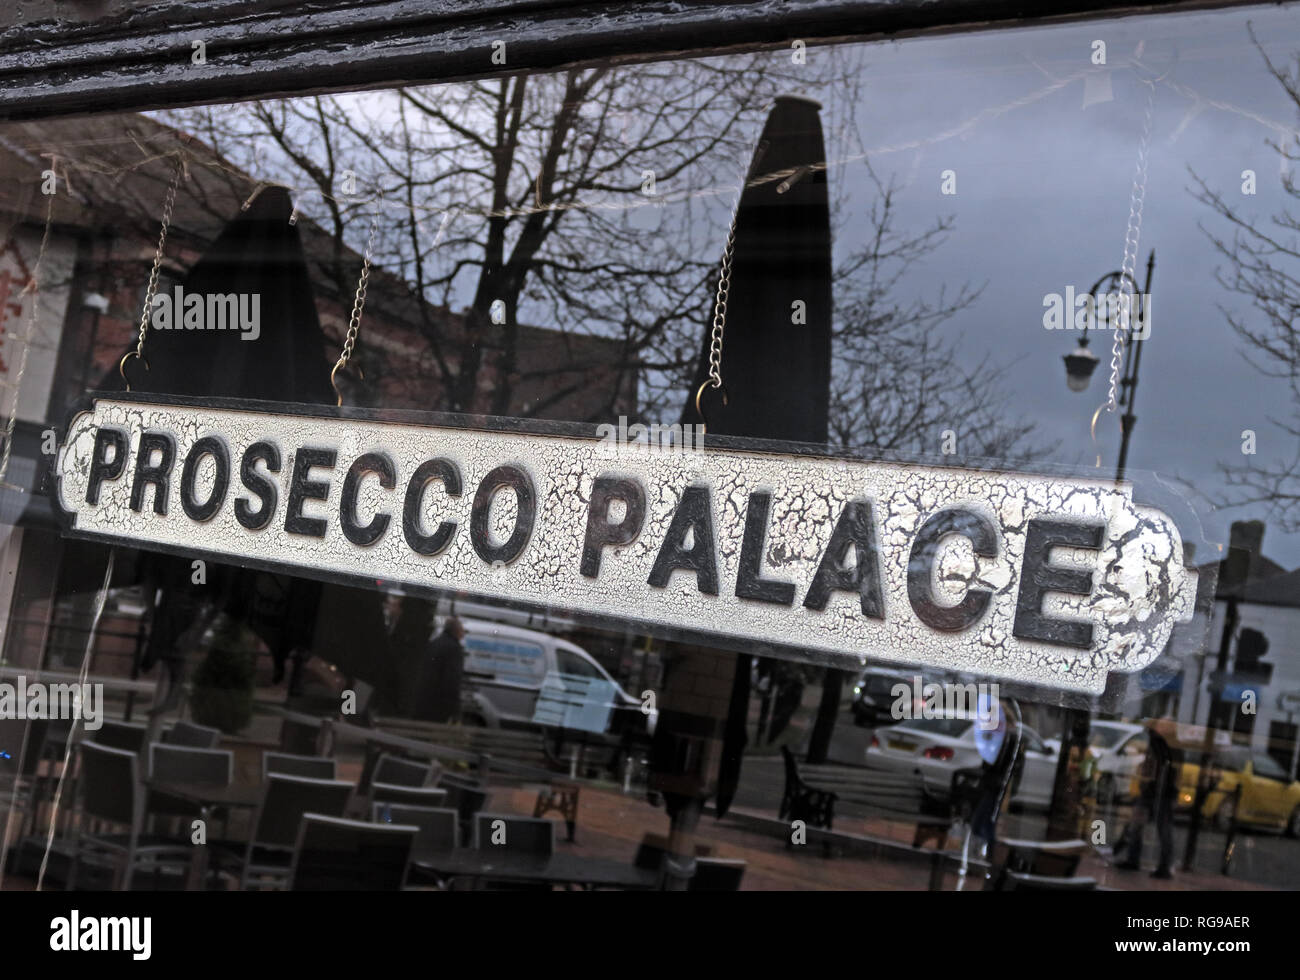 Prosecco Palace signe dans un fenêtre bar, Mûrier, Stockton Heath, Warrington, Cheshire, North West England, UK, WA4 2AF Banque D'Images